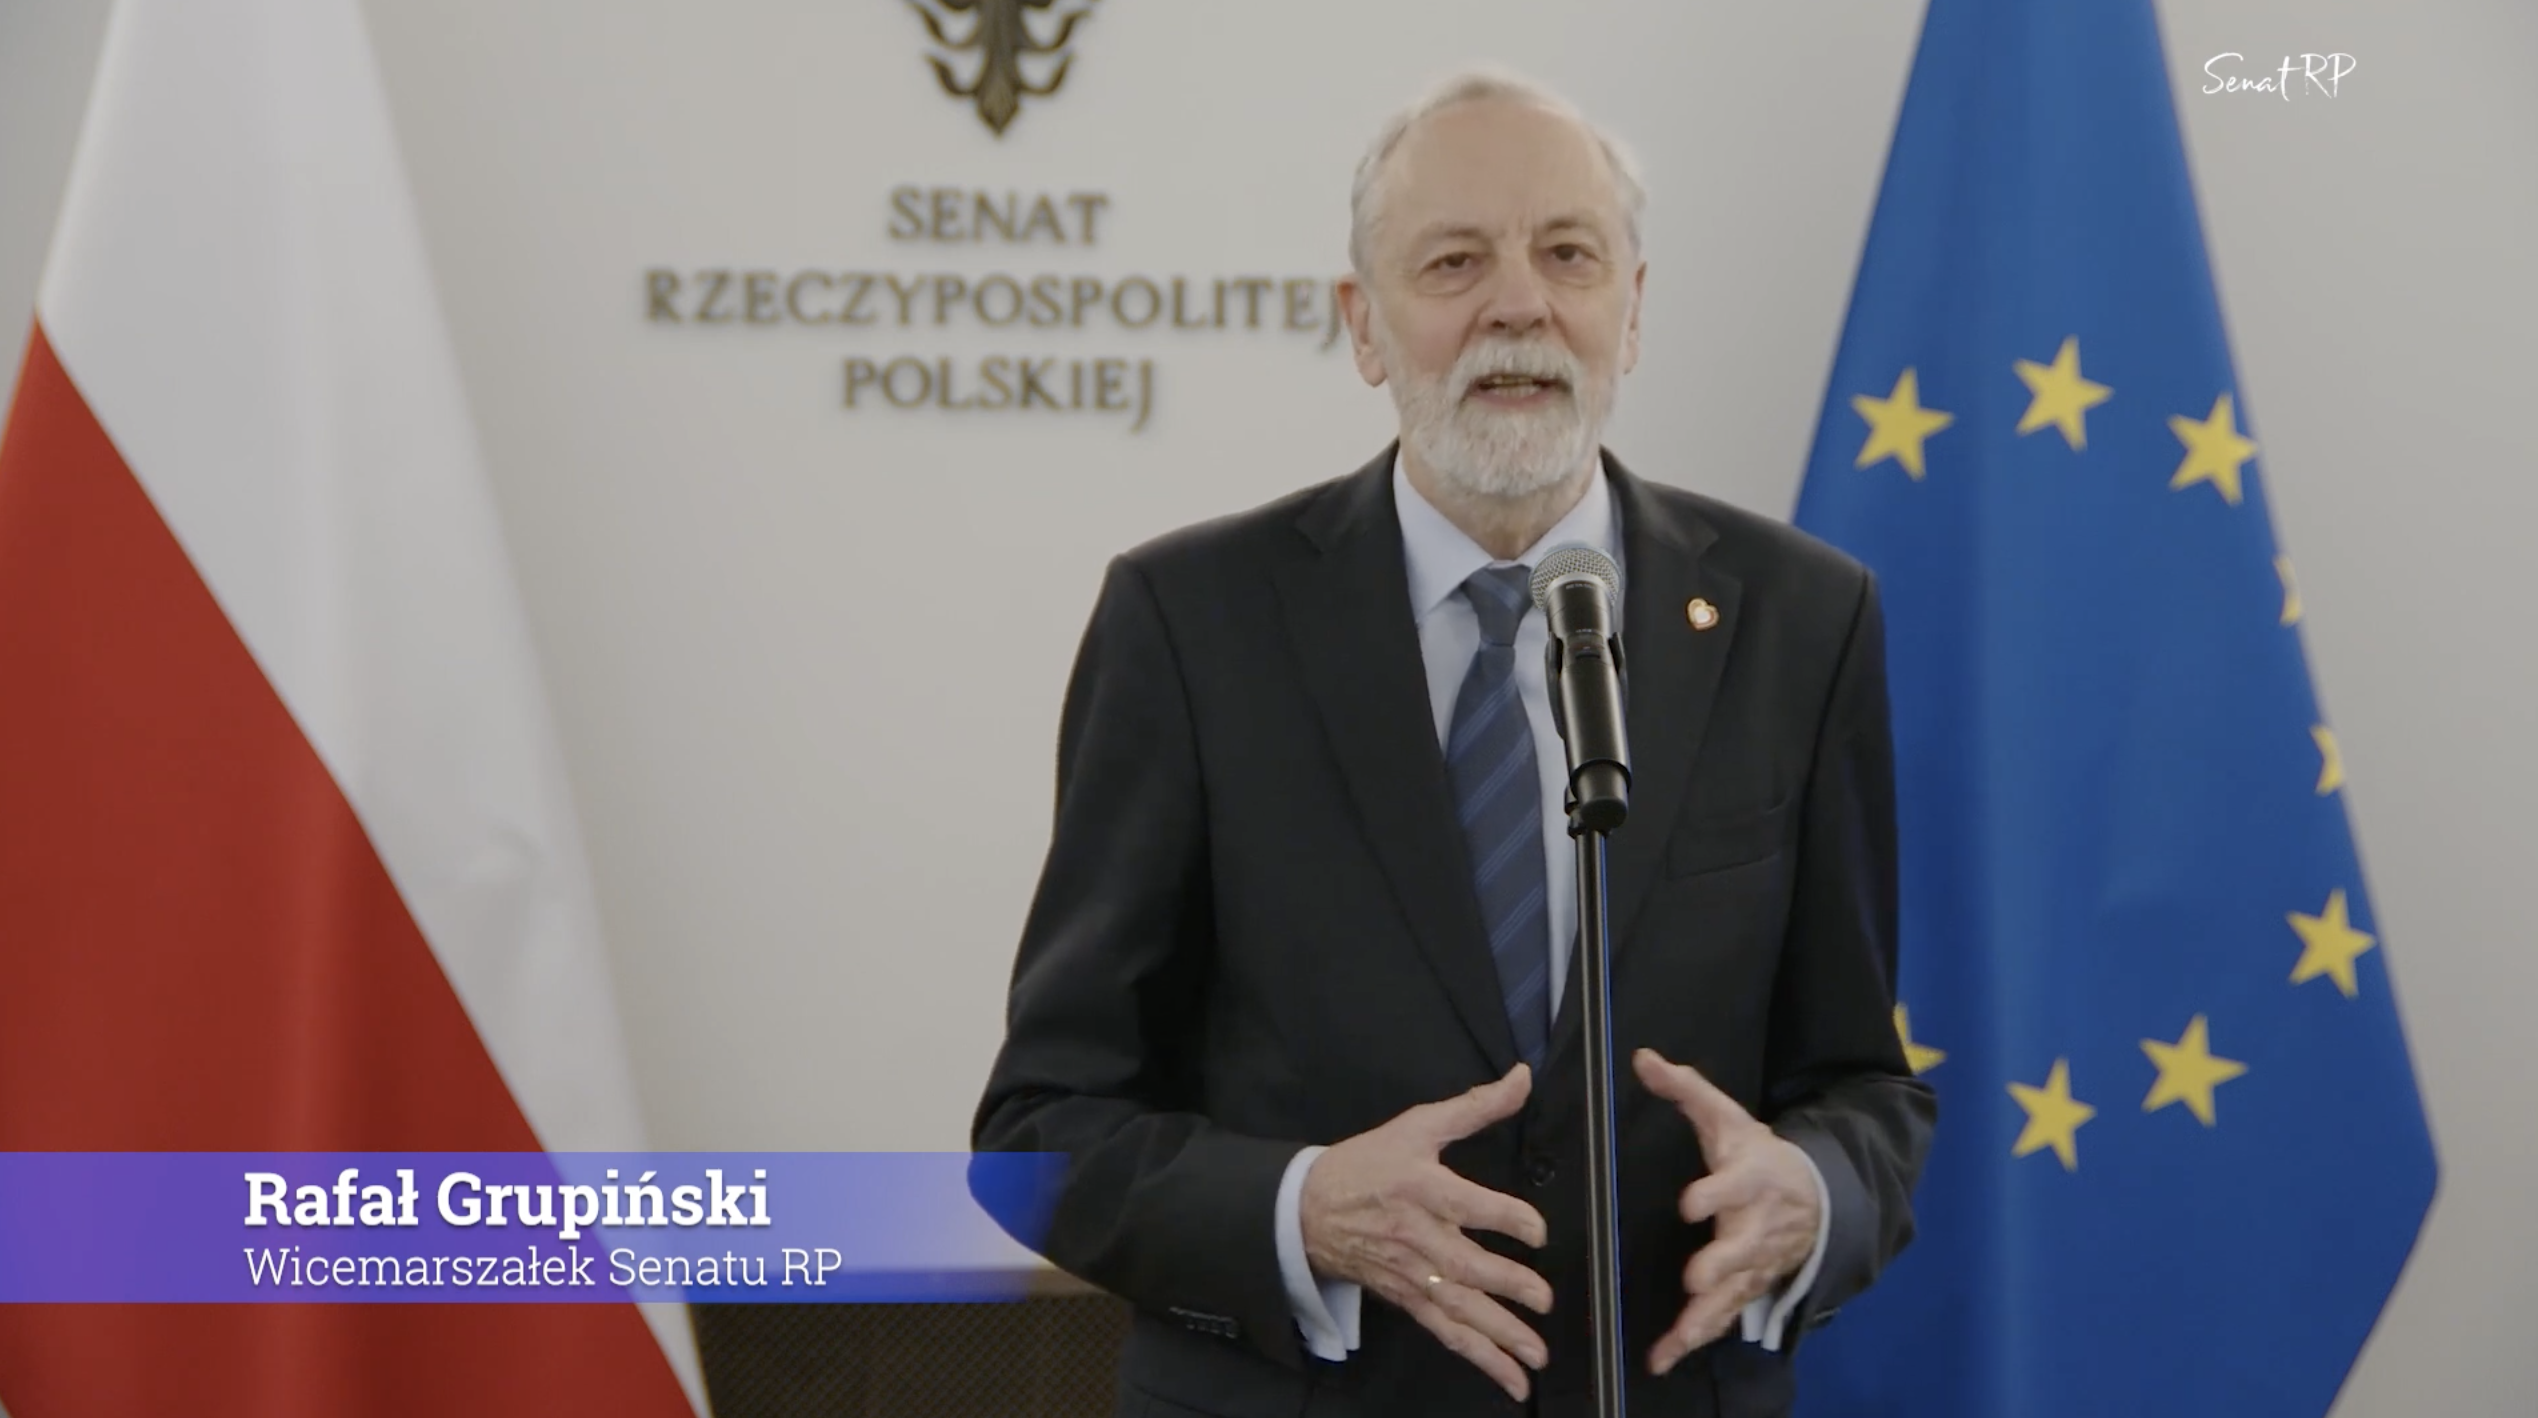 fot. 
Senat Rzeczypospolitej Polskiej / YouTube